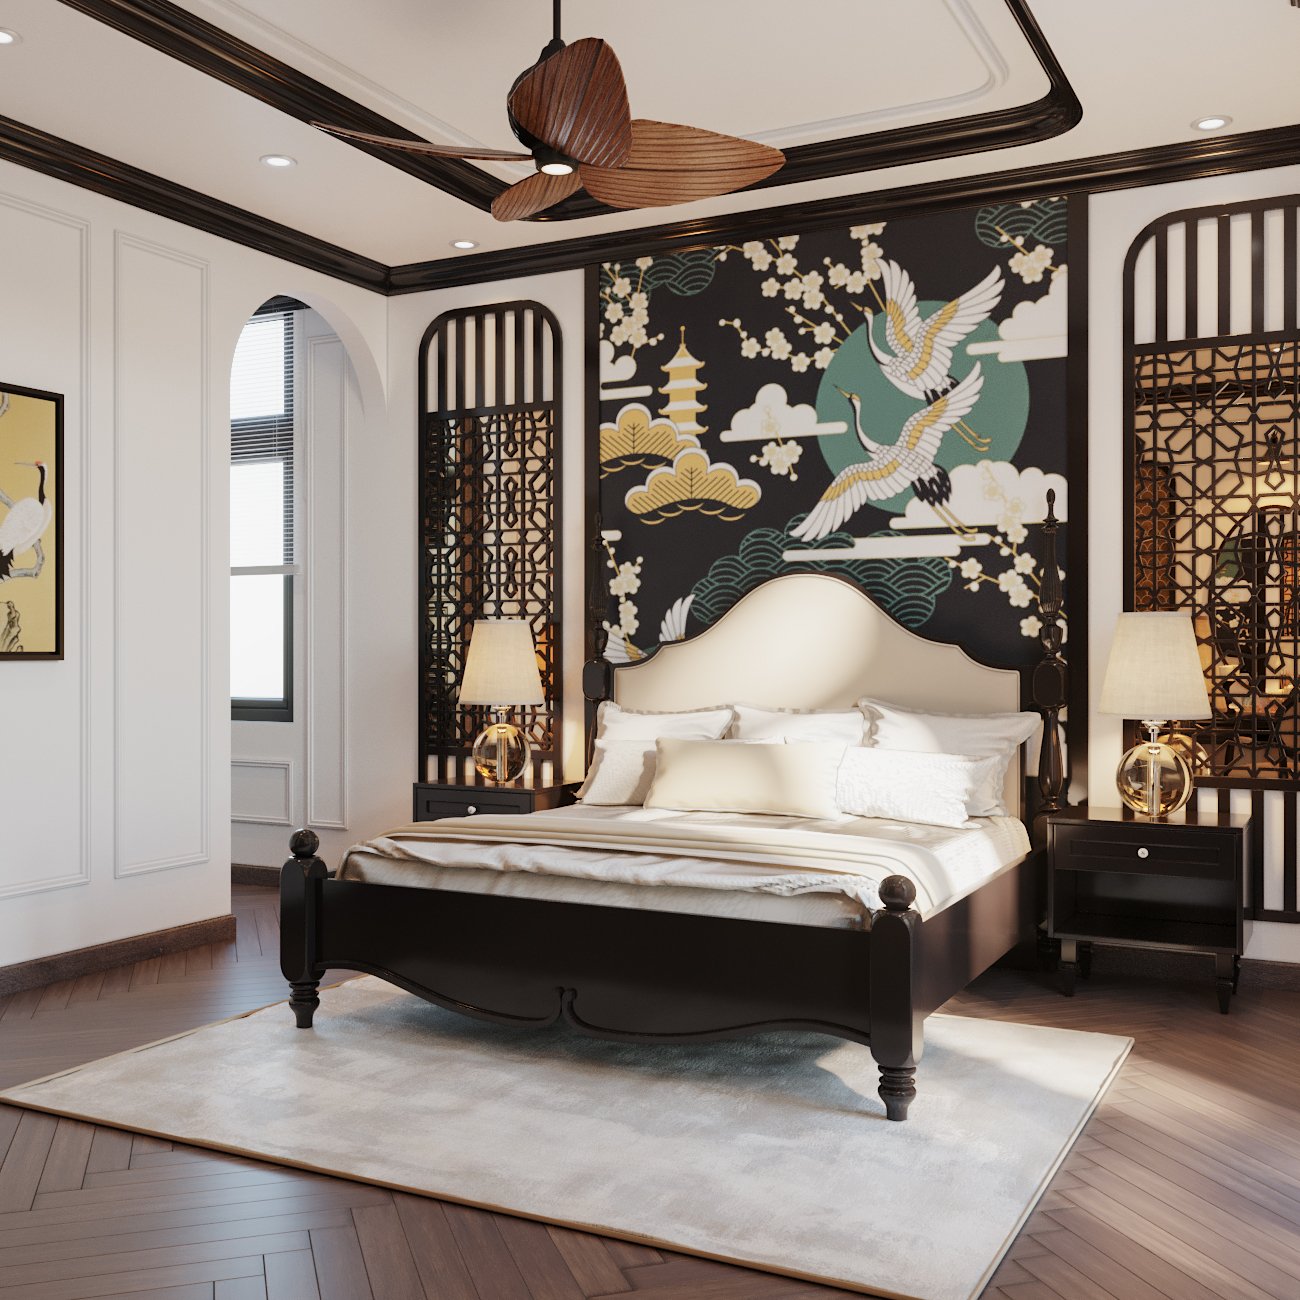 Phòng ngủ master của vợ chồng gia chủ được thiết kế tựa như một tác phẩm nghệ thuật tinh xảo với tranh đầu giường và vách lam thông thoáng.